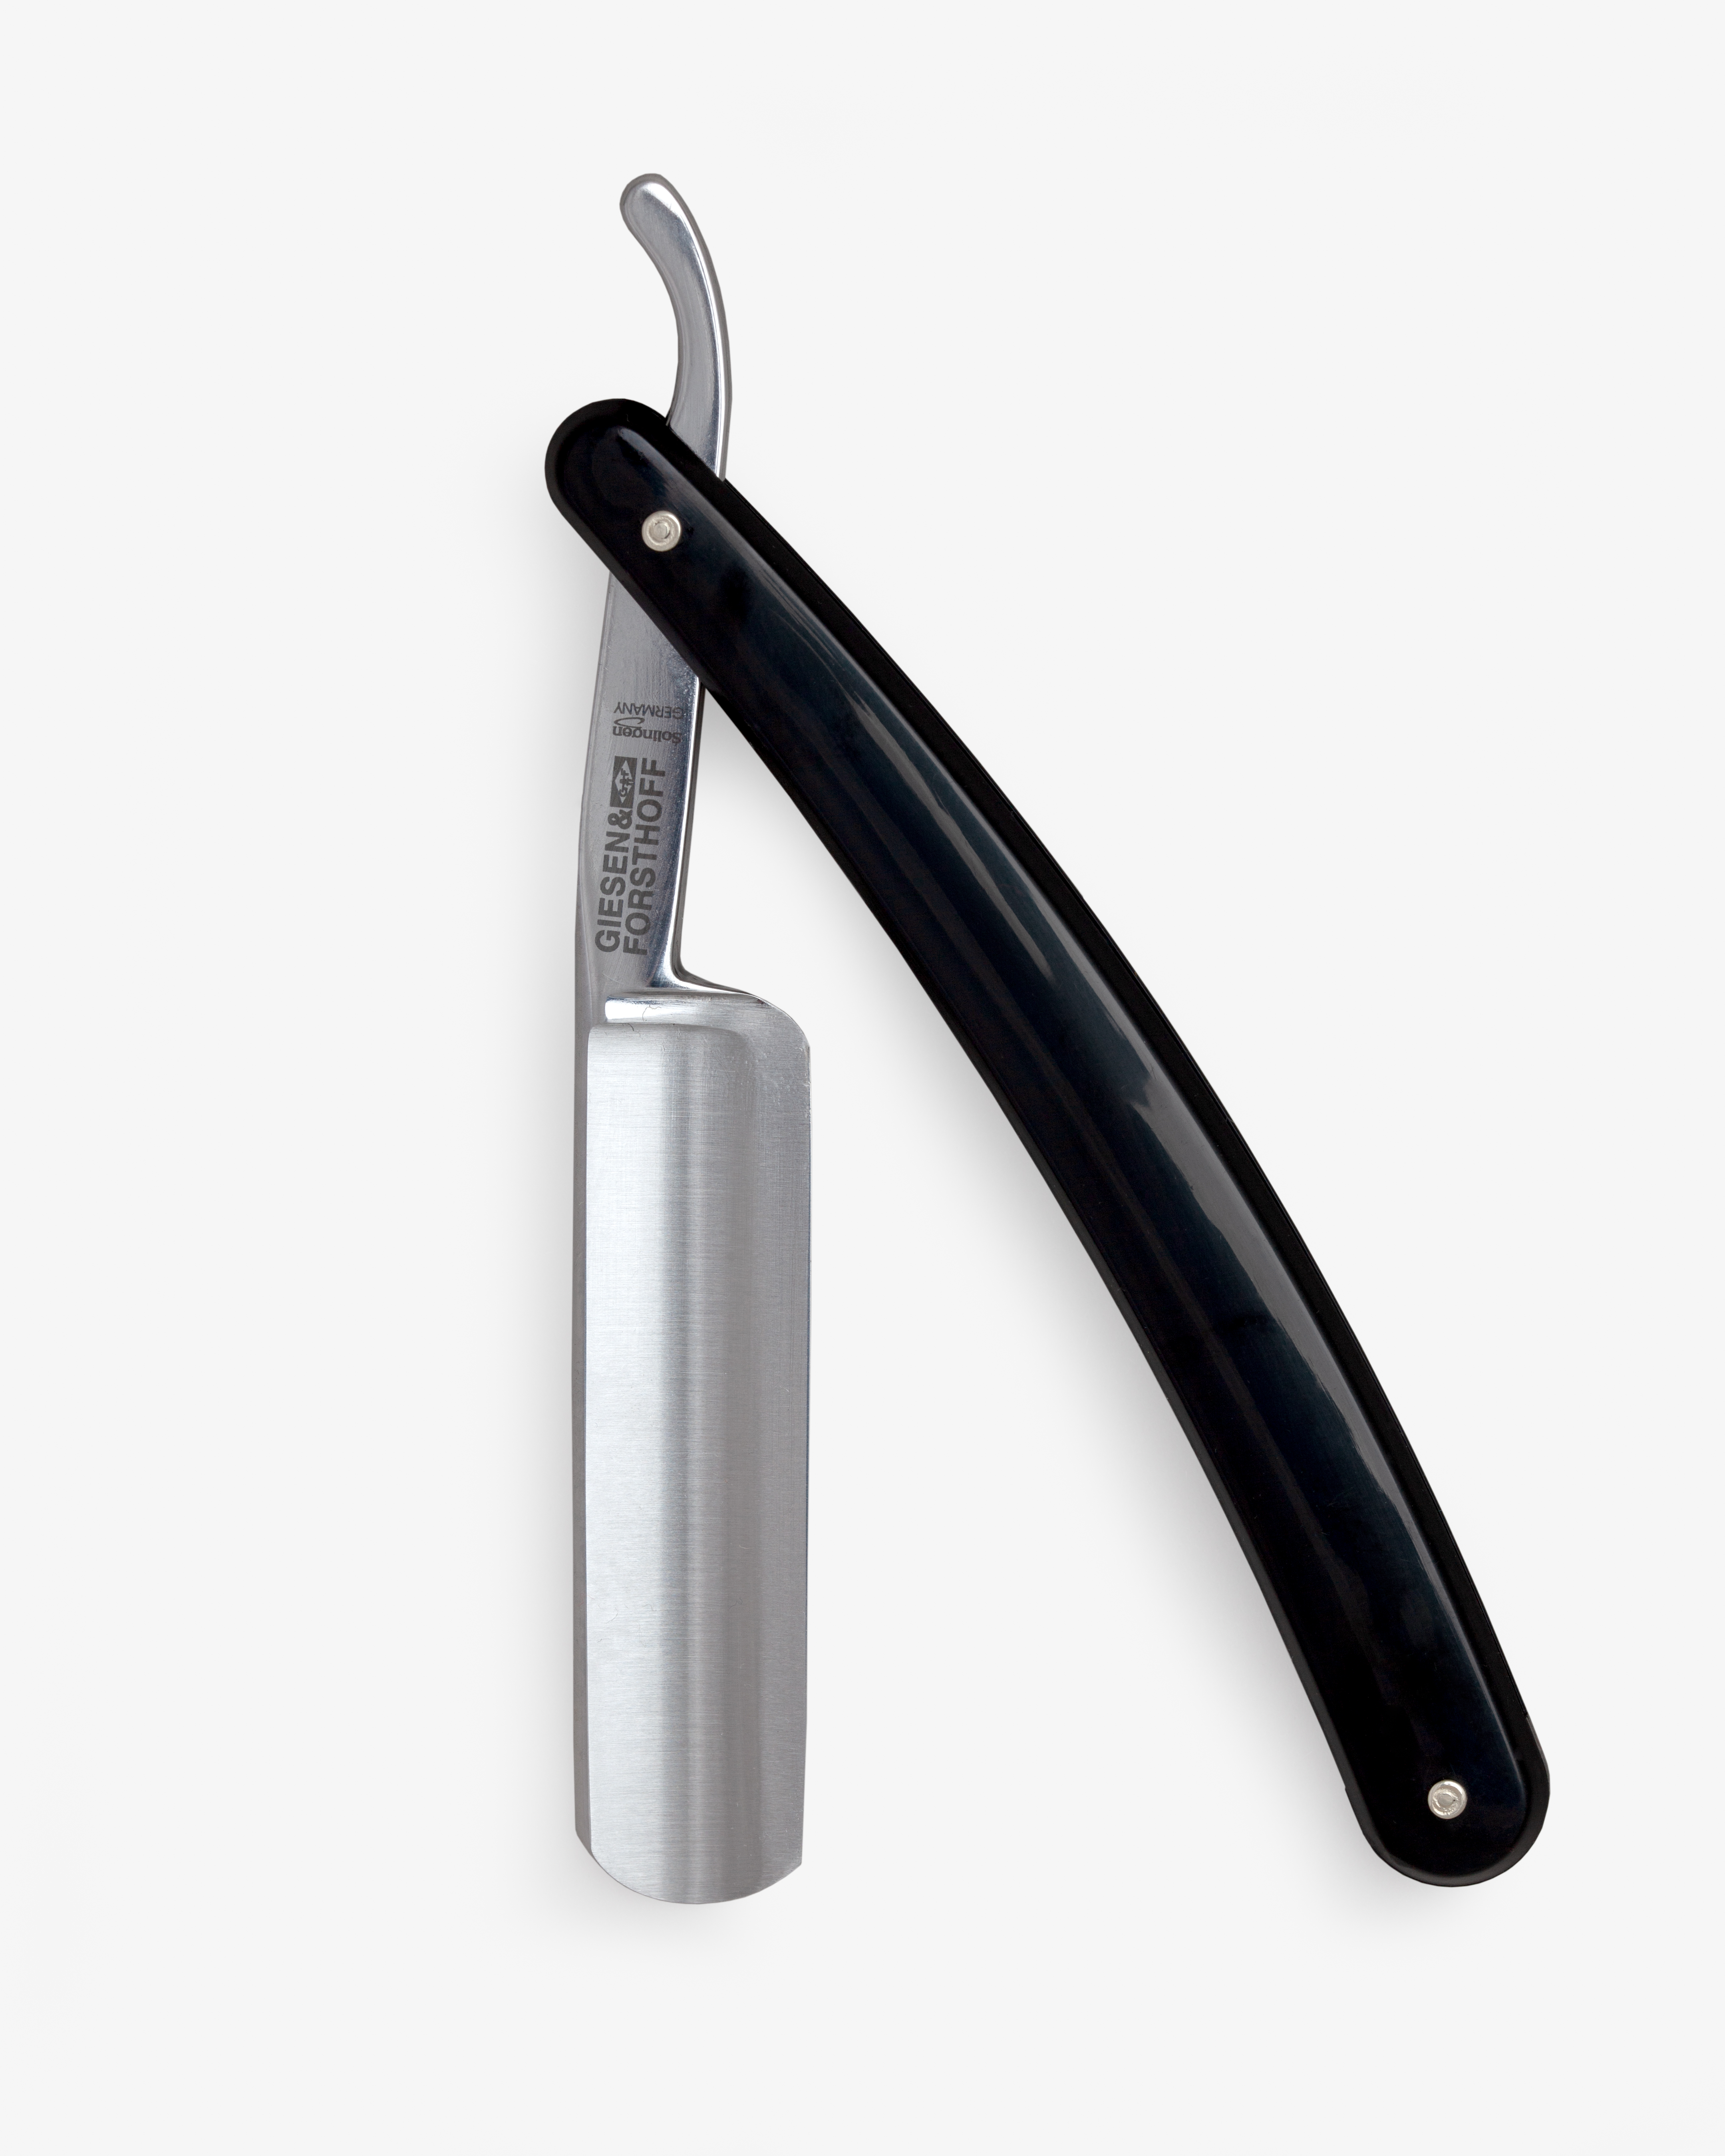 G&F Timor® Einsteiger-Rasiermesser 5/8 cs mit Kunststoffschale